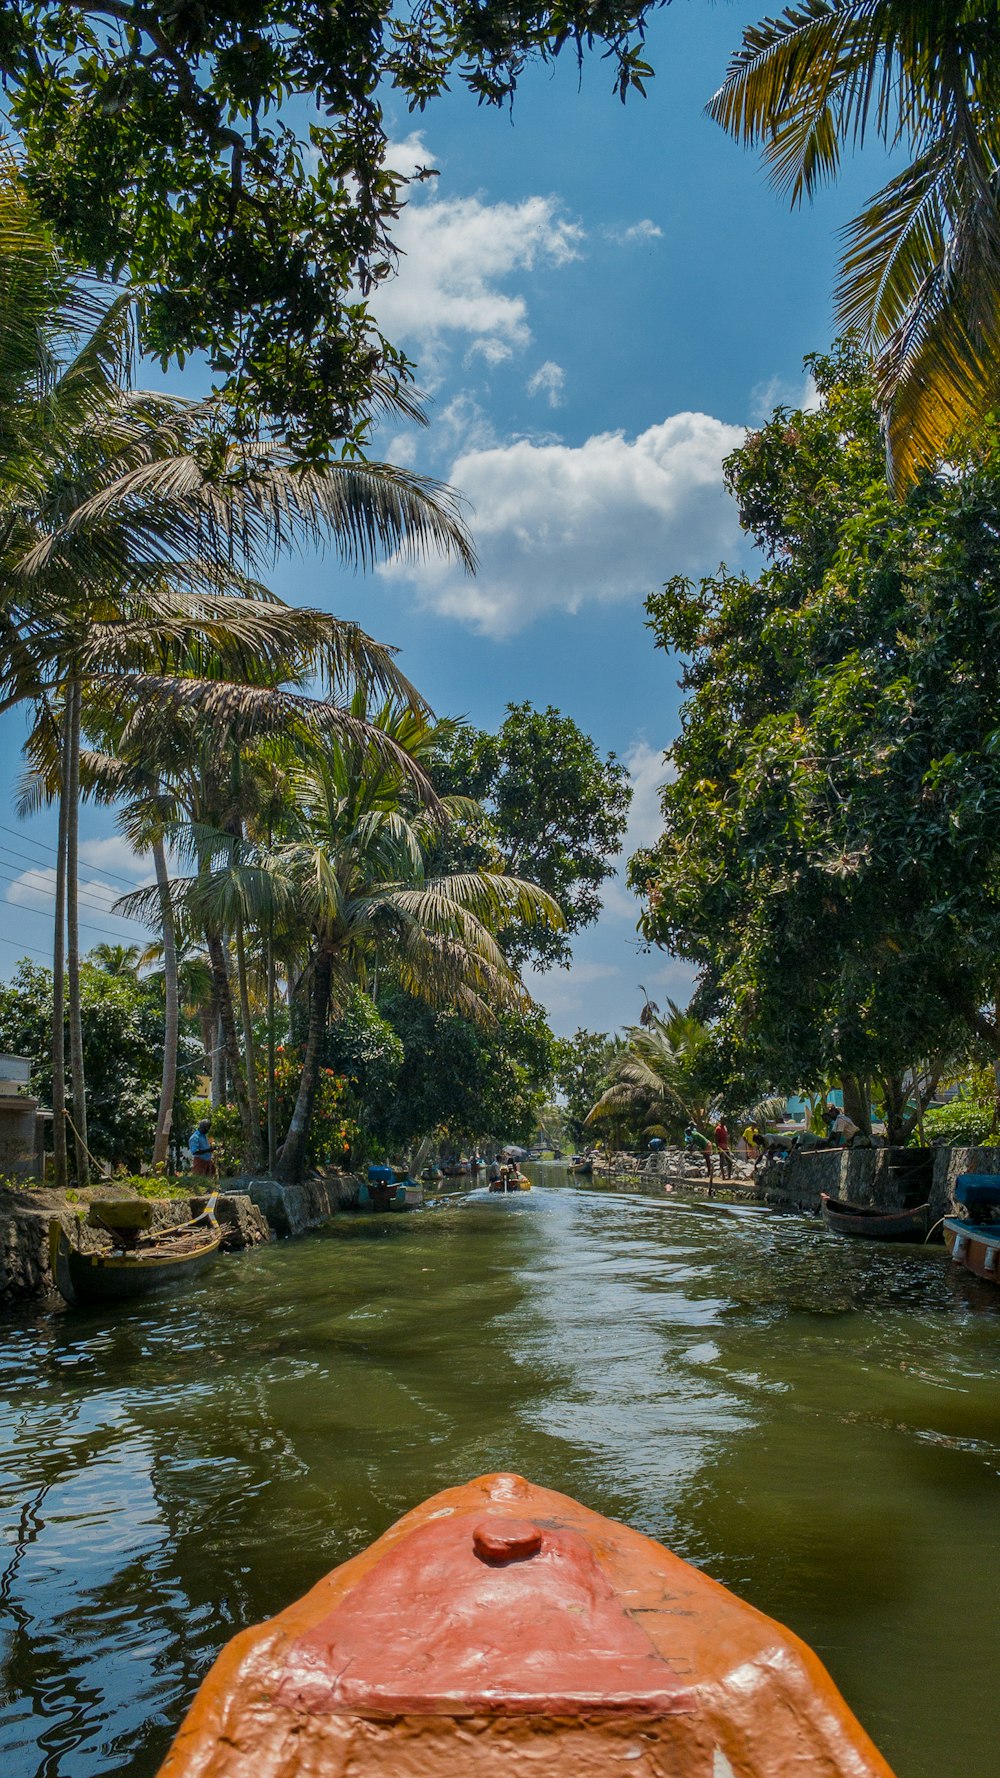 Una barca che viaggia lungo un fiume circondata da palme